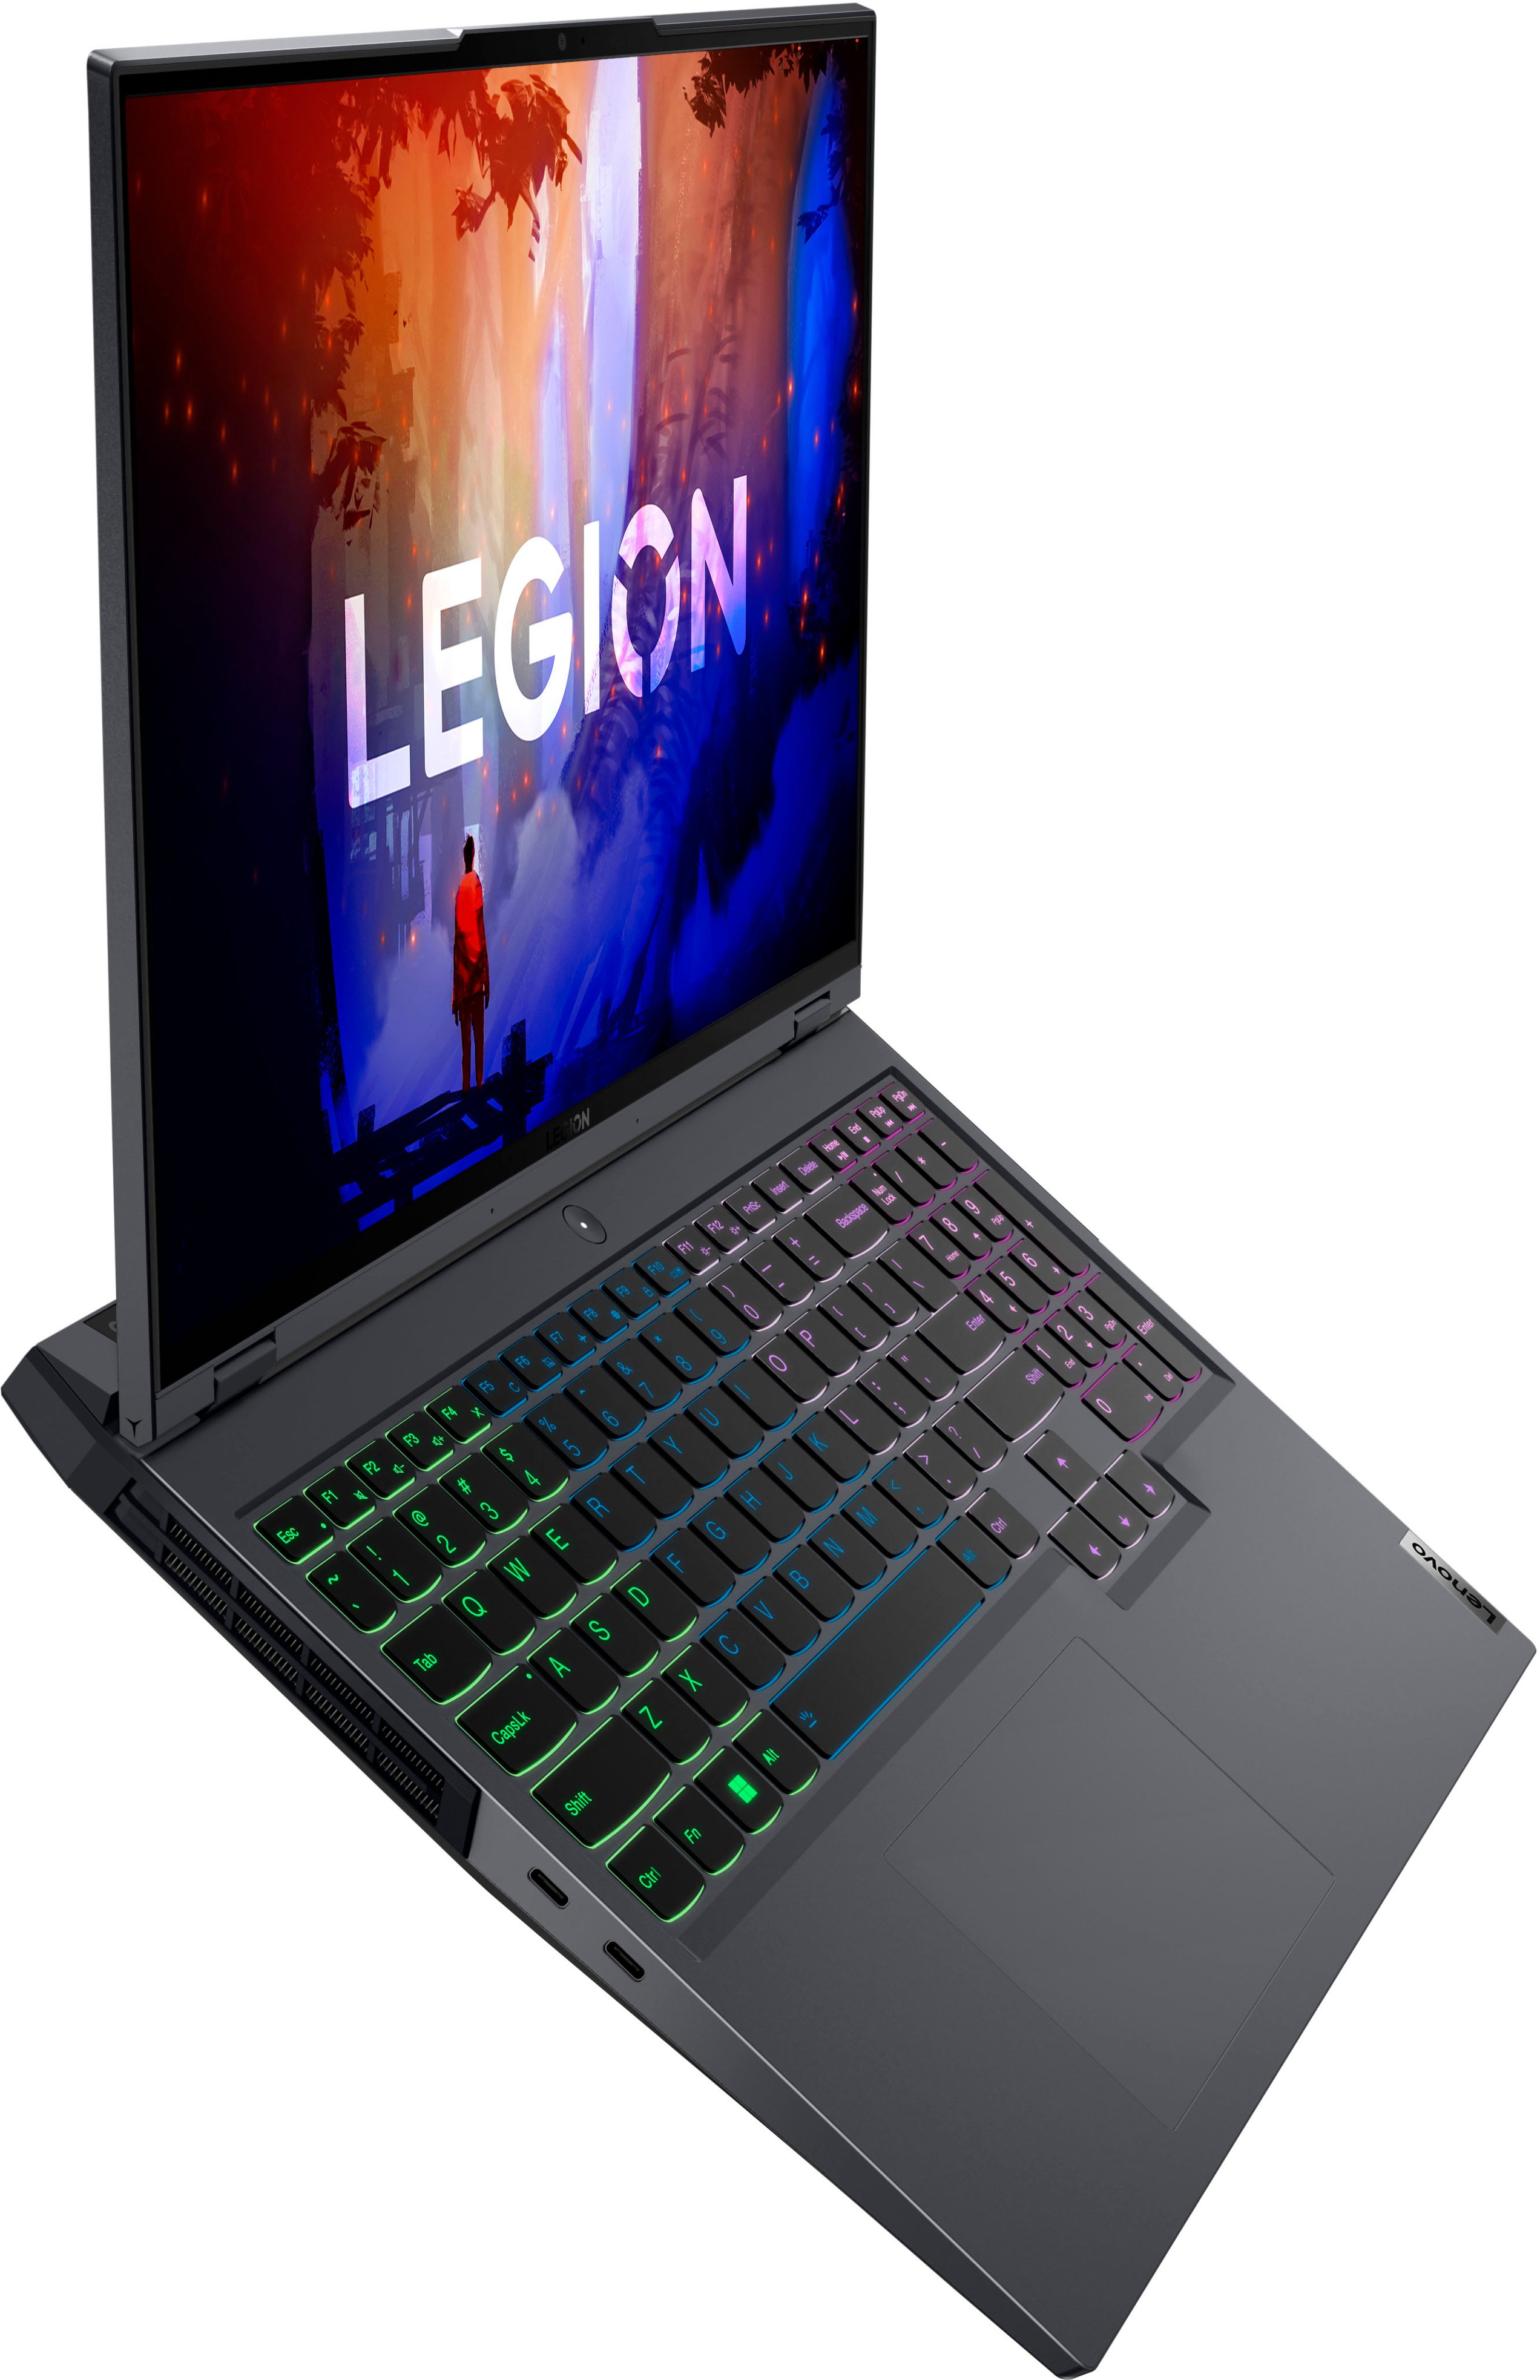 Lenovo Legion 5 Pro 16 Gaming Laptop WQXGA Display 165Hz AMD Ryzen 7-5800H  16GB RAM 1TB SSD NVIDIA GeForce RTX 3070 8GB GDDR6